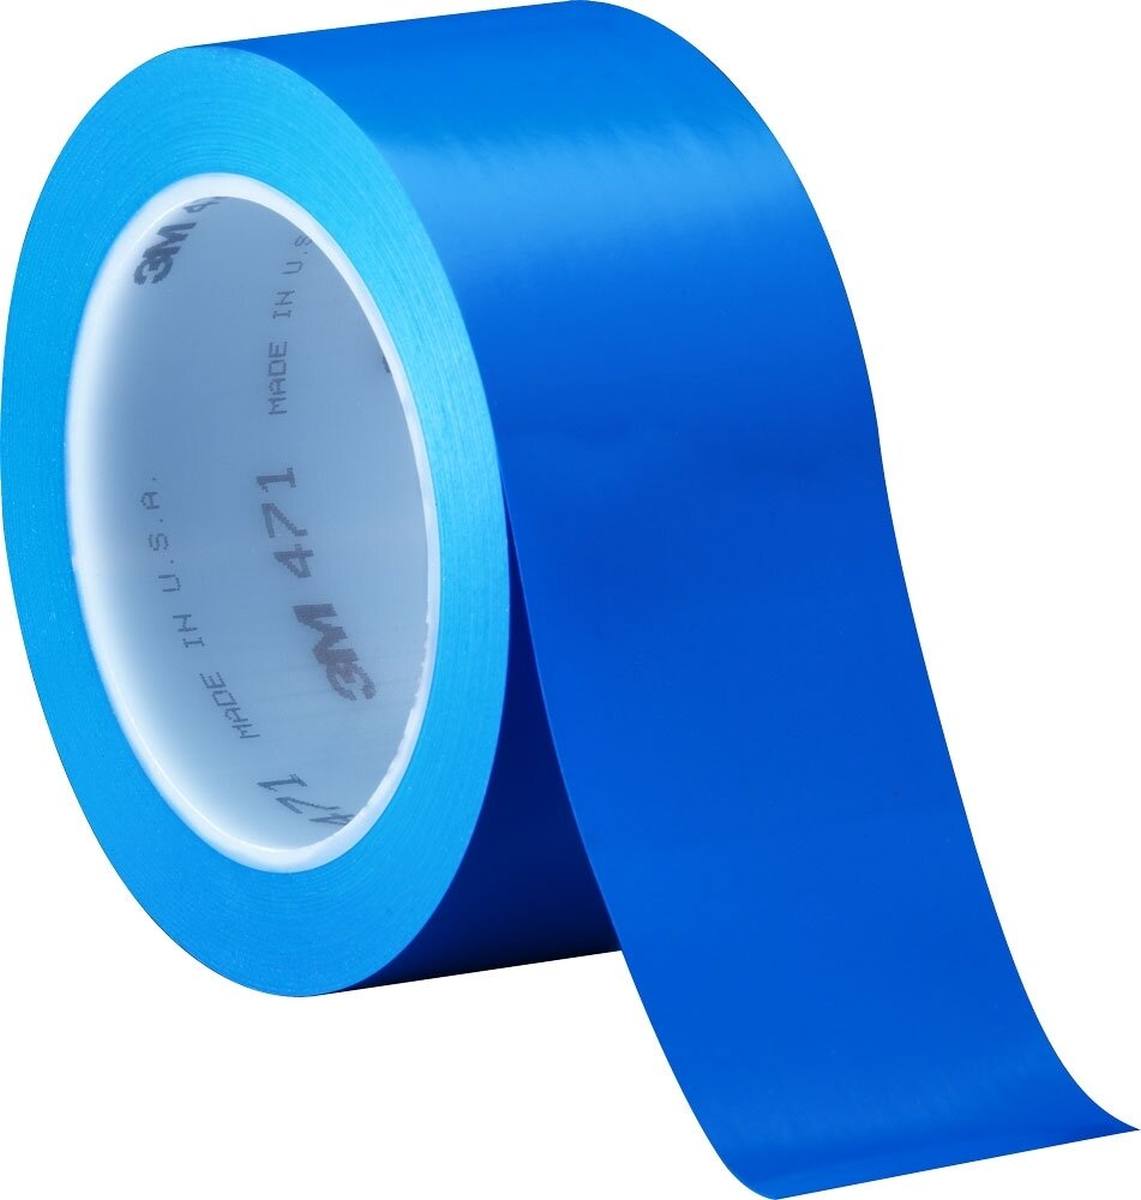 Nastro adesivo 3M in PVC morbido 471 F, blu, 25 mm x 33 m, 0,13 mm